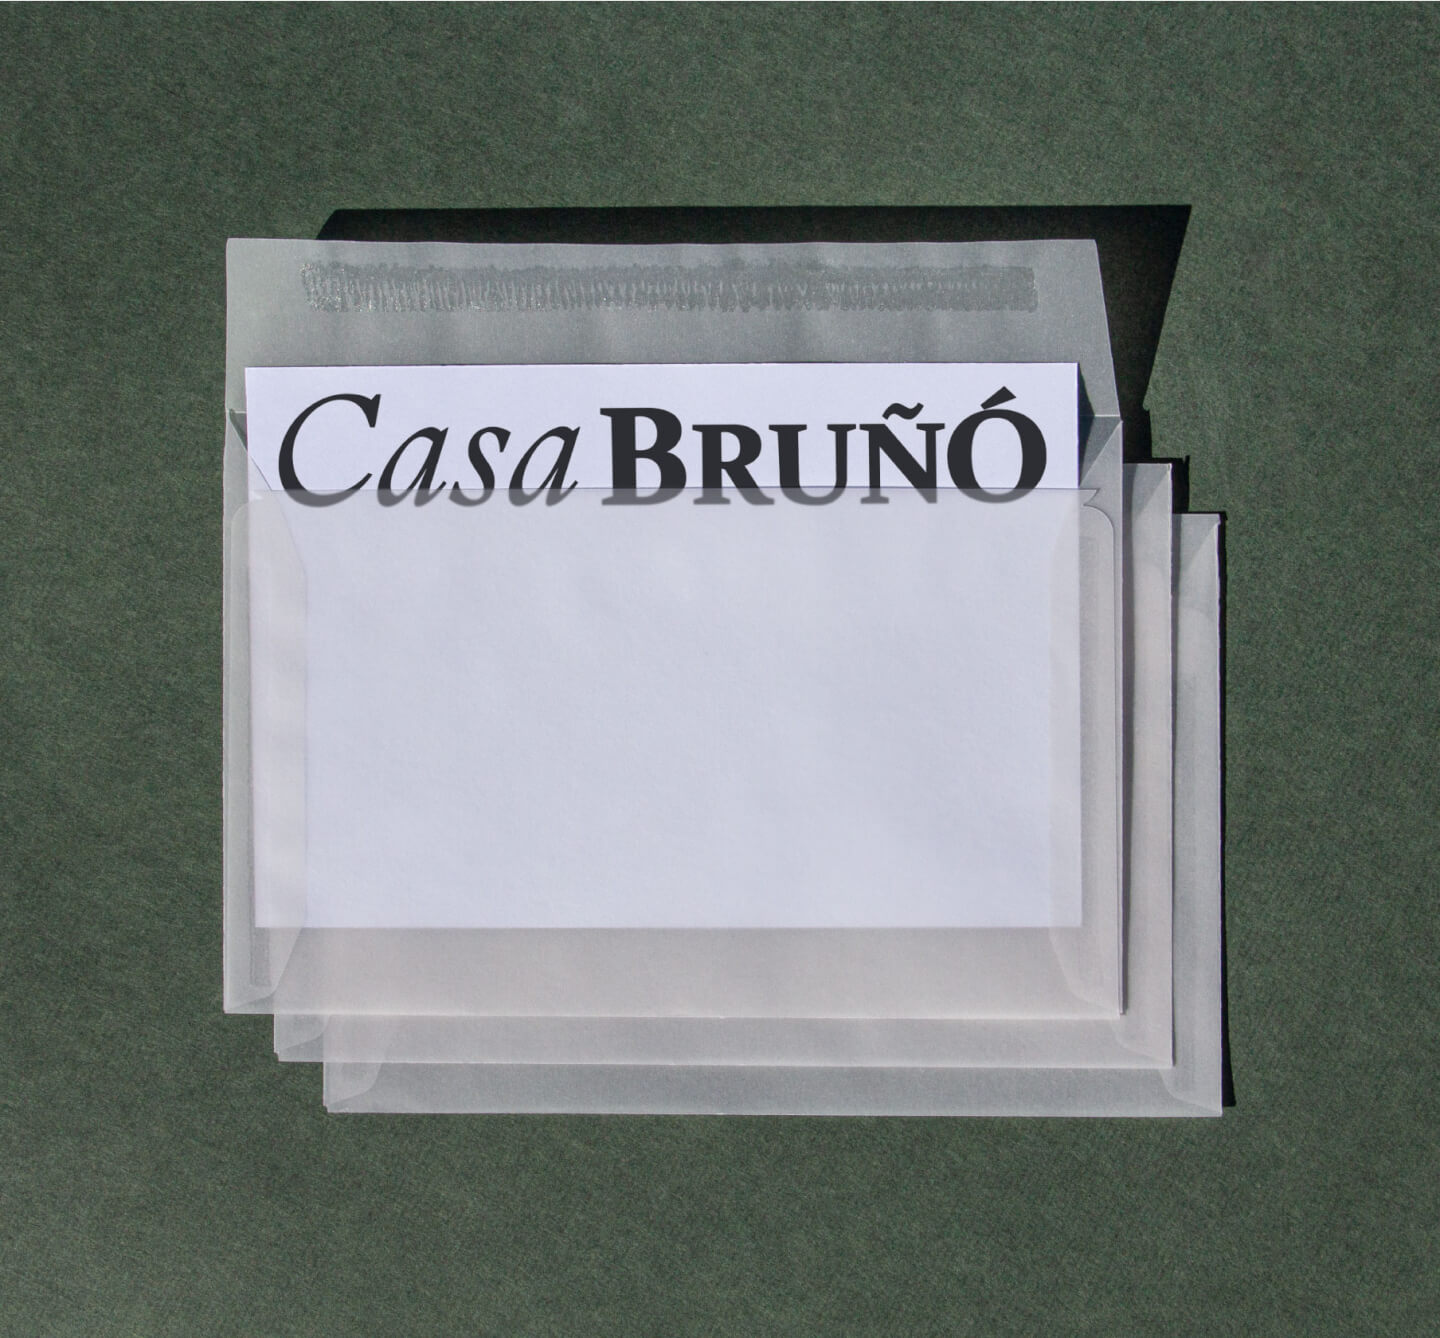 Muestra del diseño de postales de Casa Bruñó